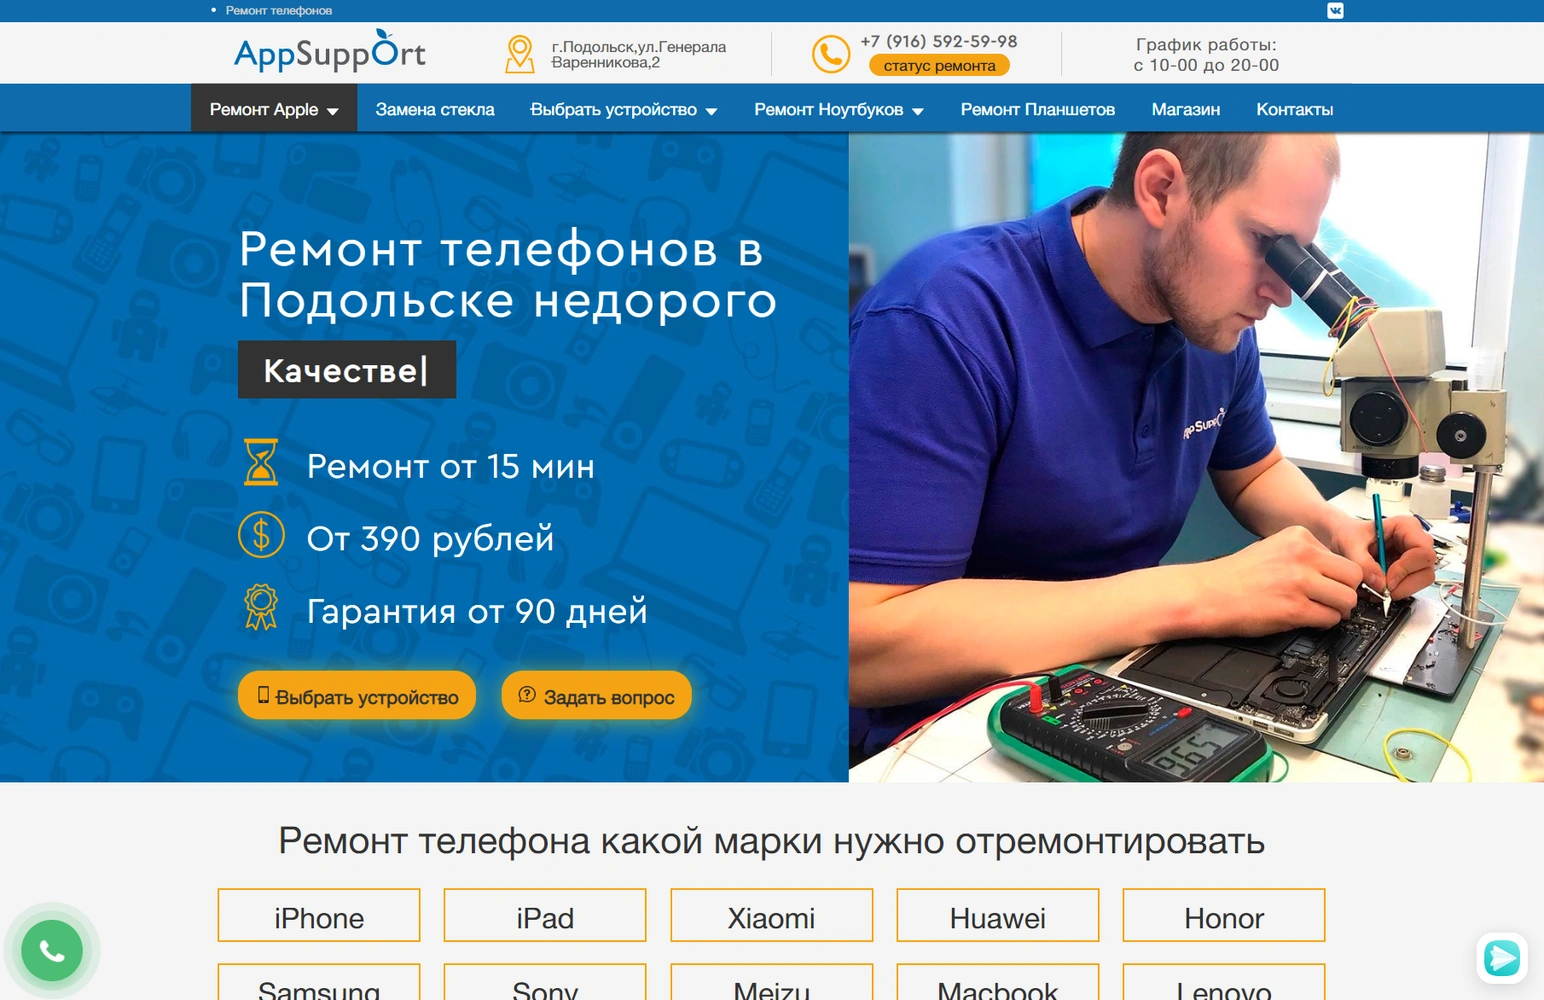 Apppsupport - Ремонт телефонов в Подольске